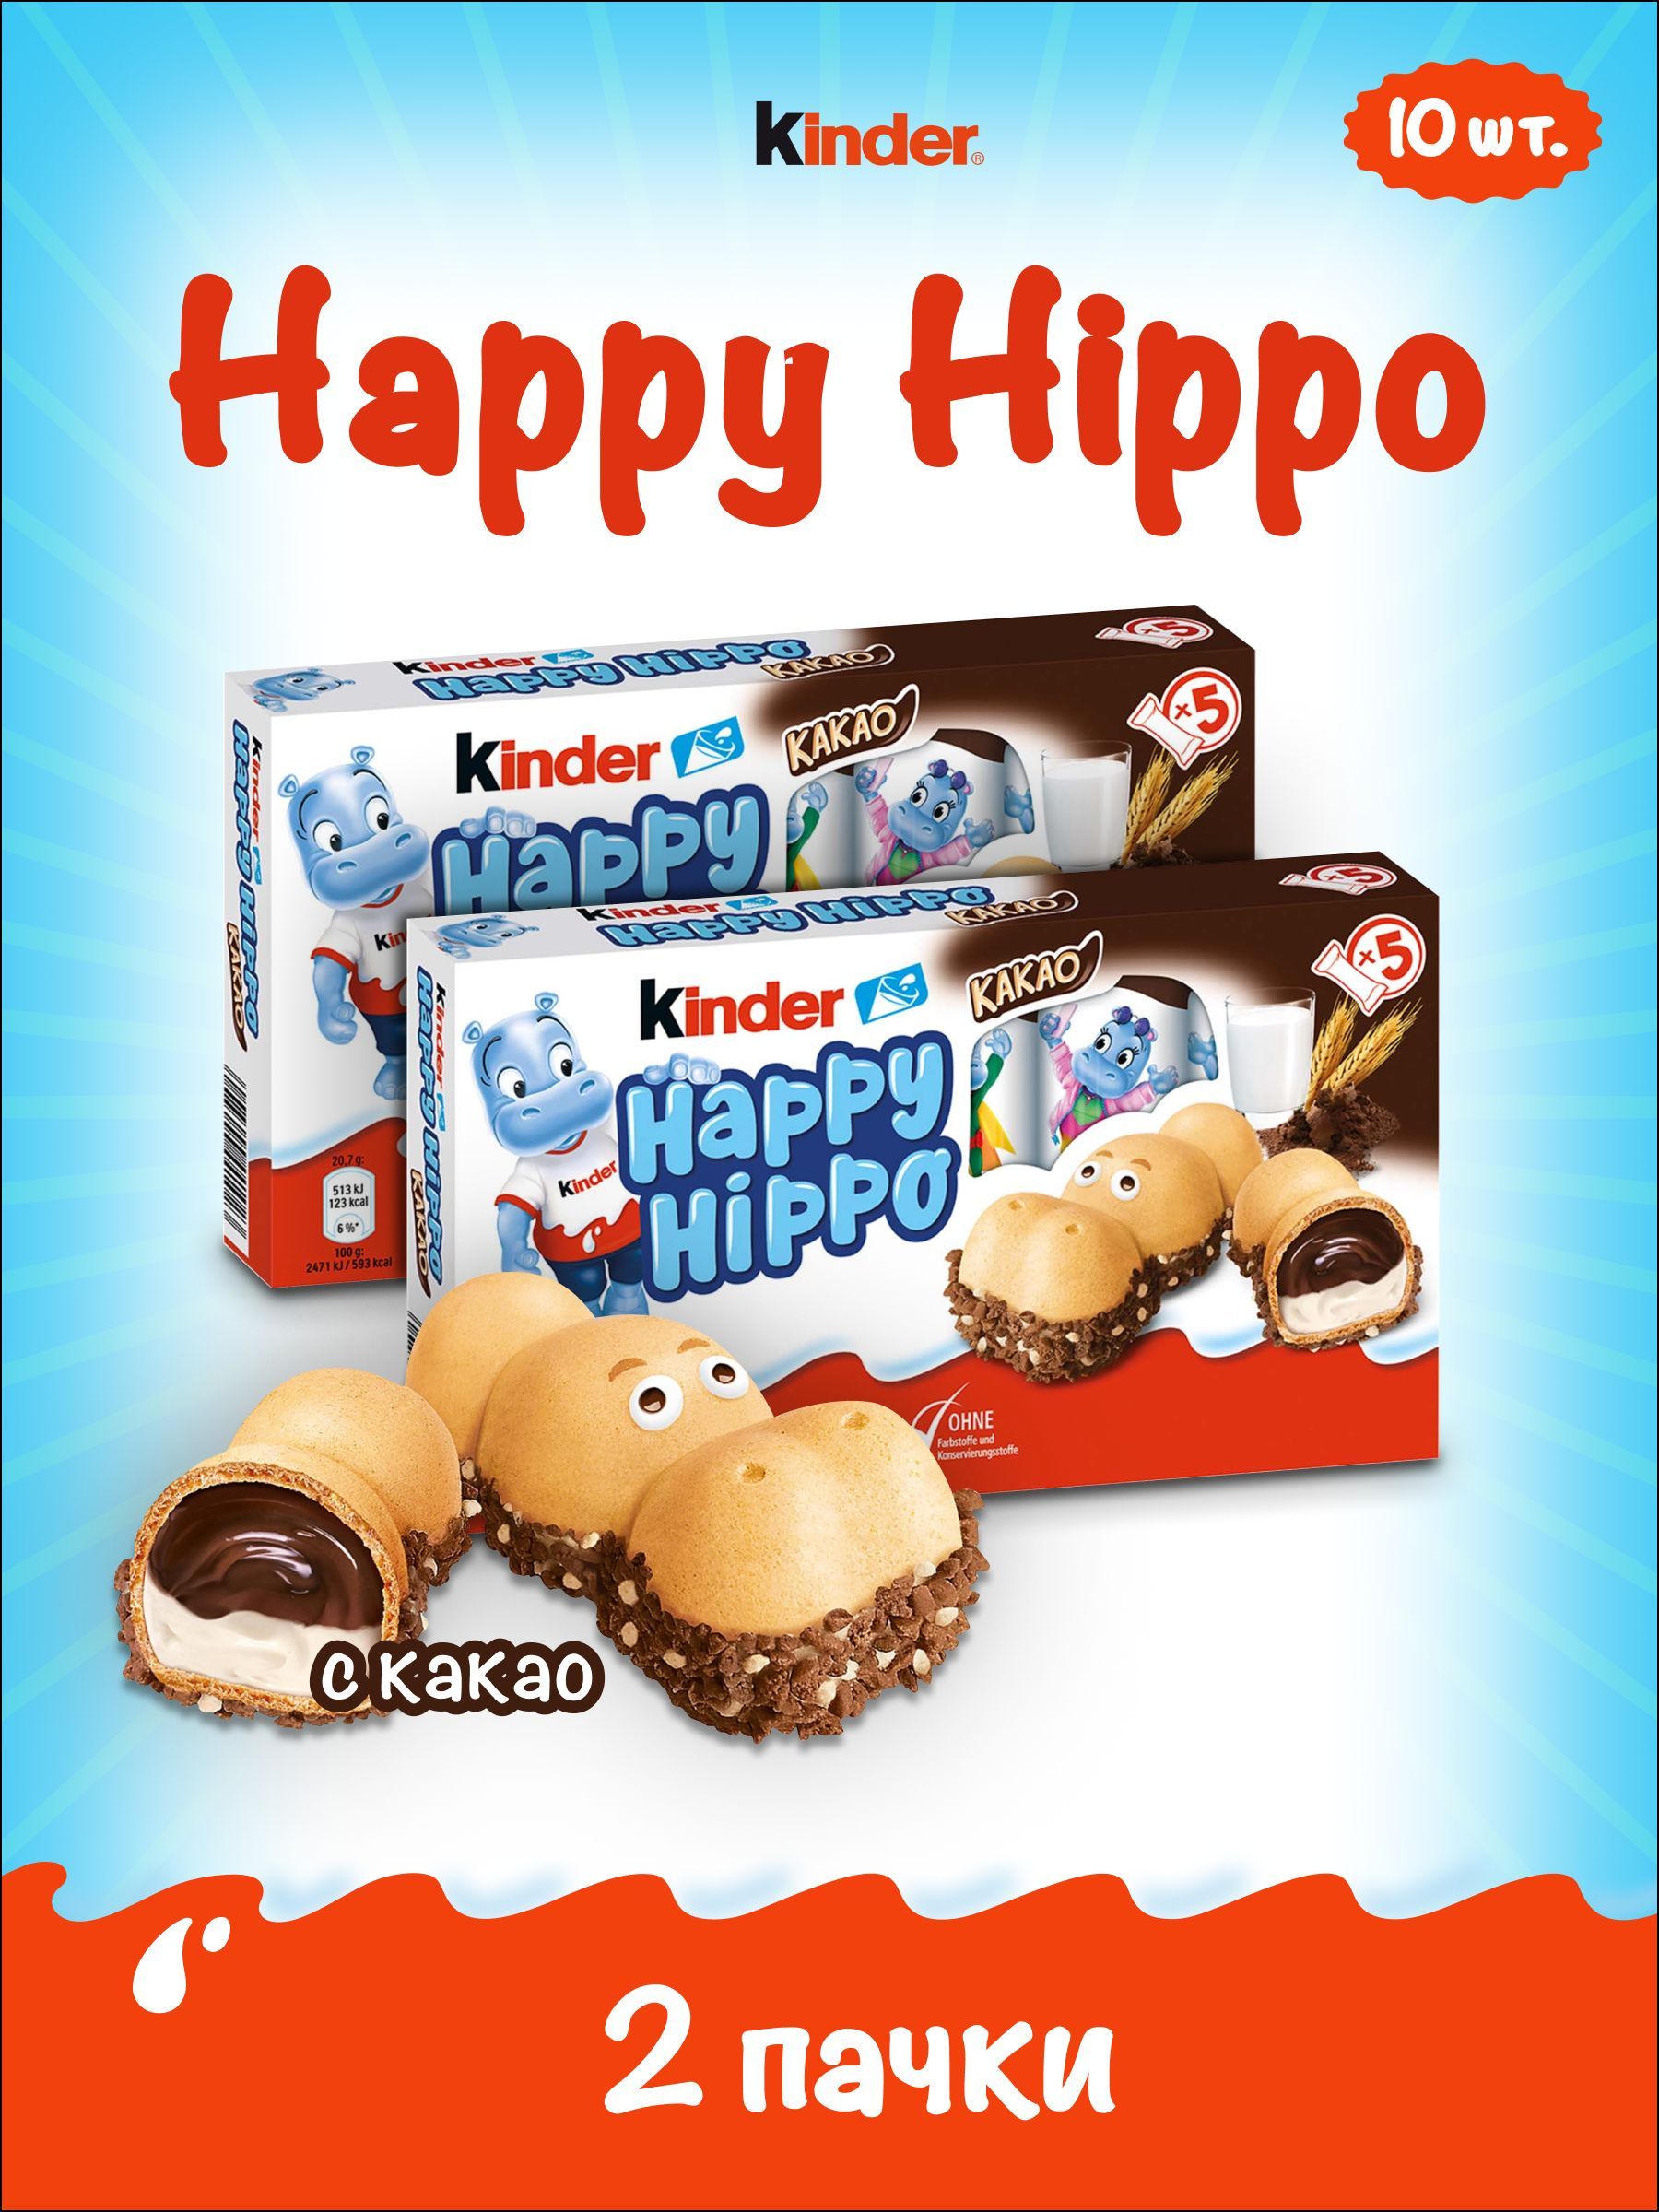 Киндер печенье. Киндер Хэппи Хиппо батончик. Хэппи Хиппо Киндер бегемотики. Киндер печенье с шоколадом. Happy Hippo в 2010.